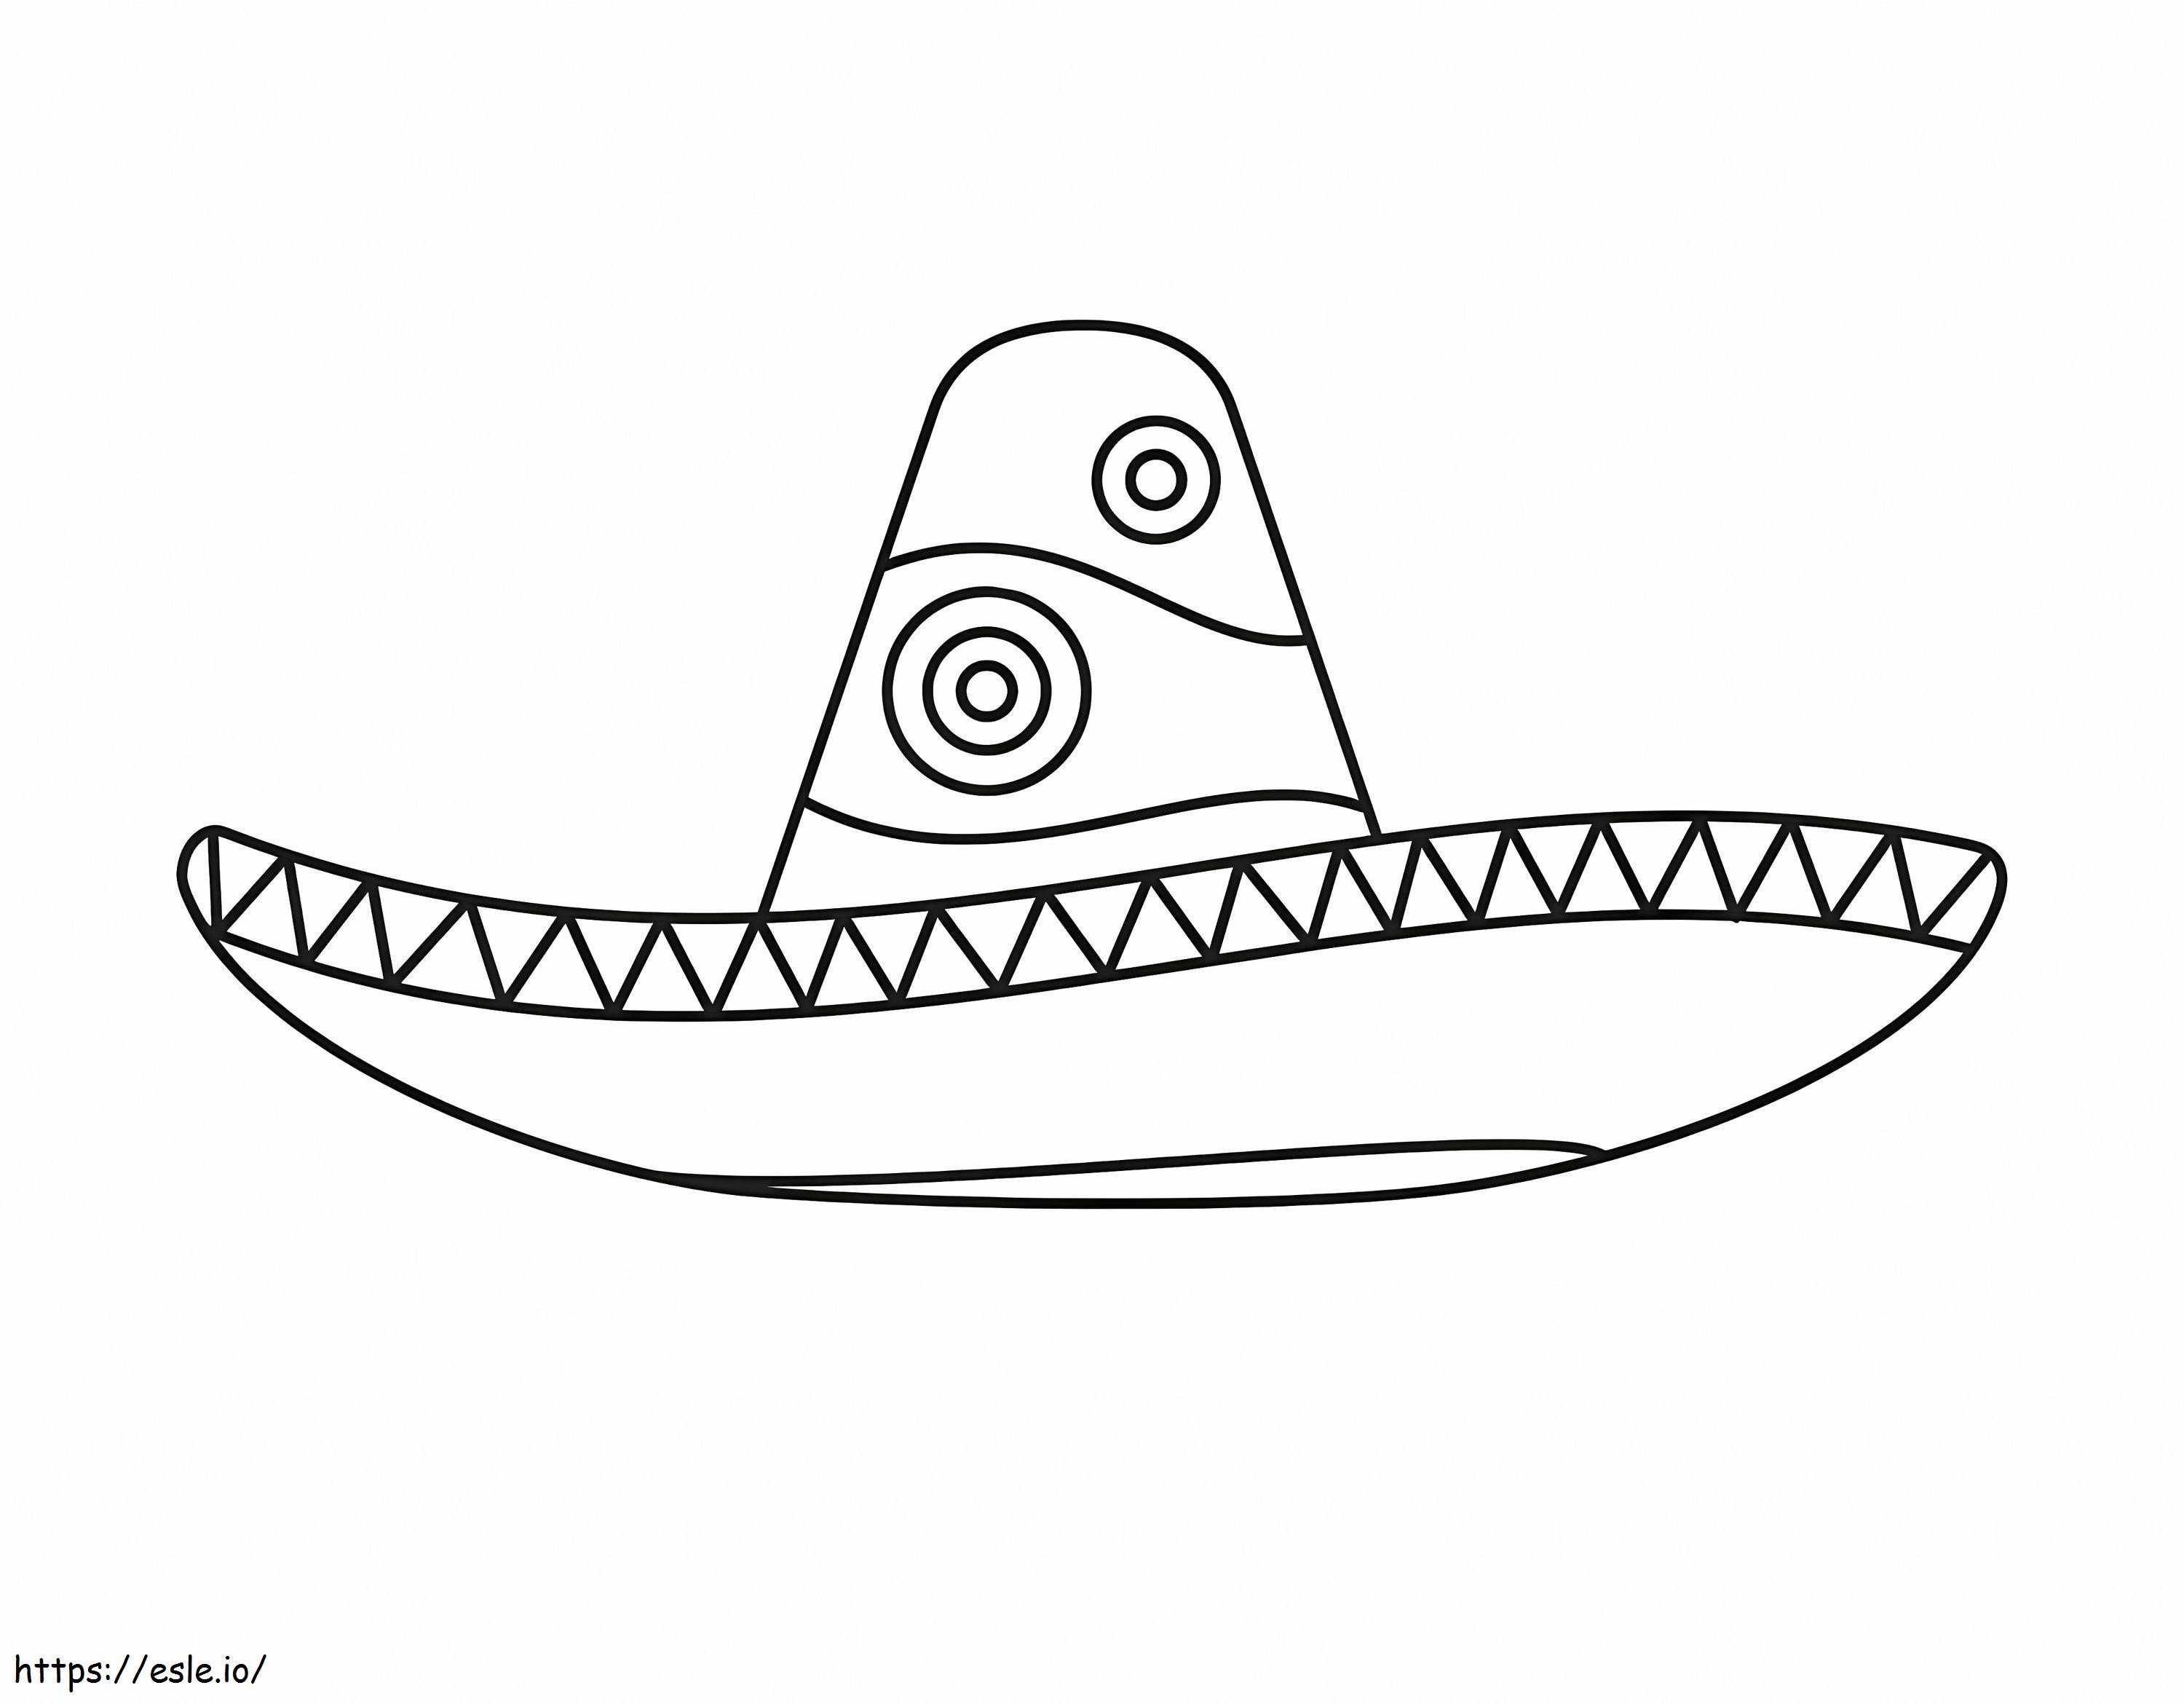 Bel sombrero messicano da colorare